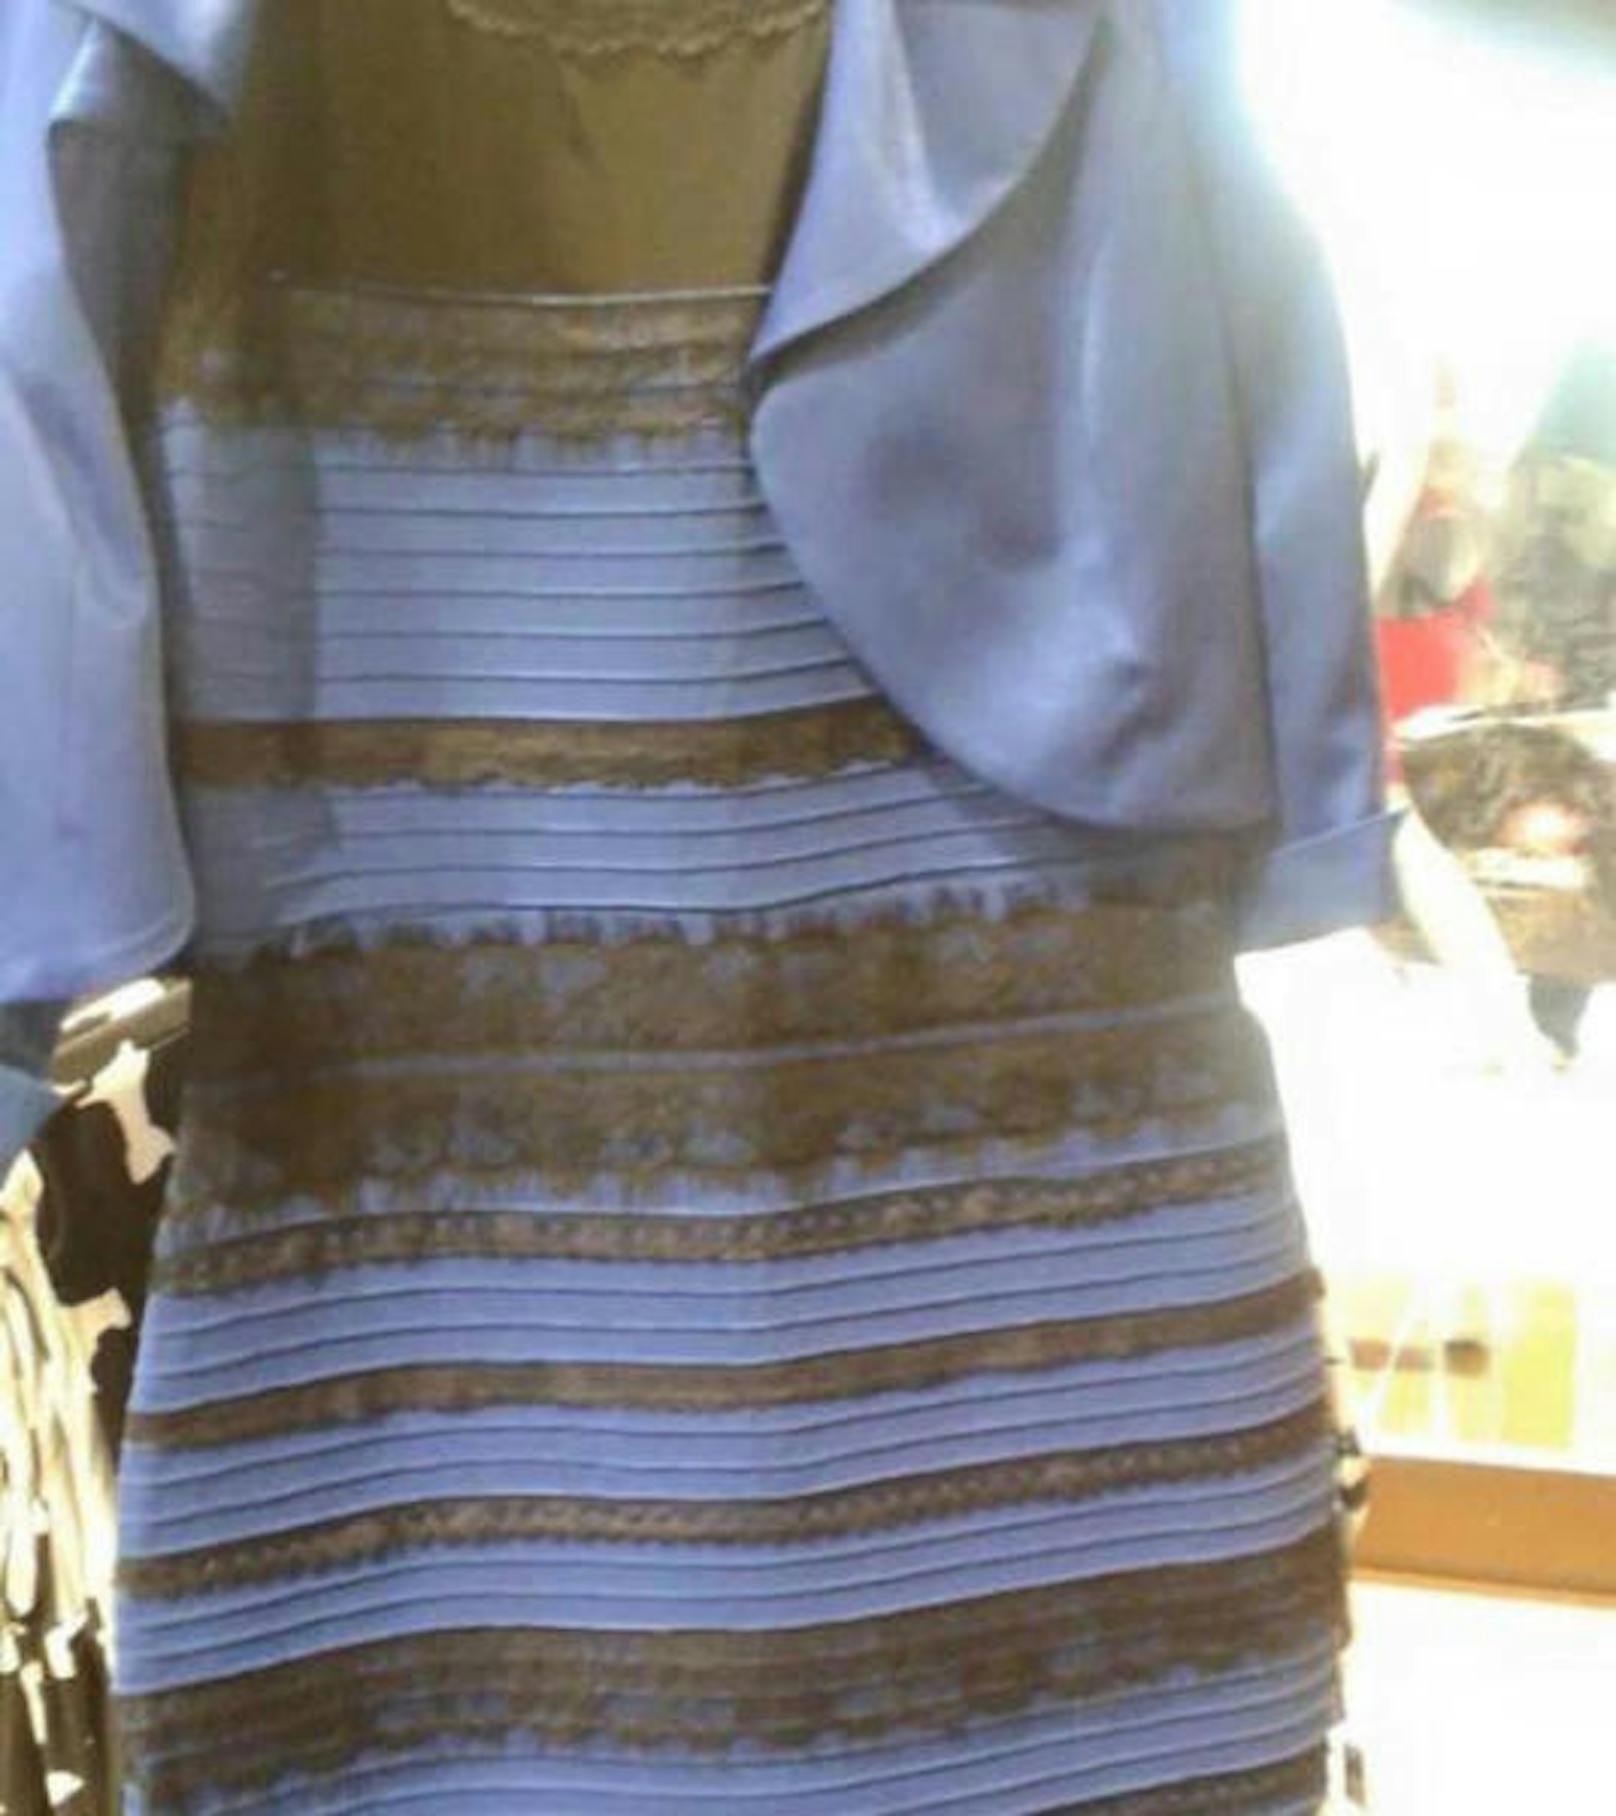 ... das bekannteste Foto dieser Kategorie: The Dress. Ist das Kleid schwarz-blau oder weiß-gold?